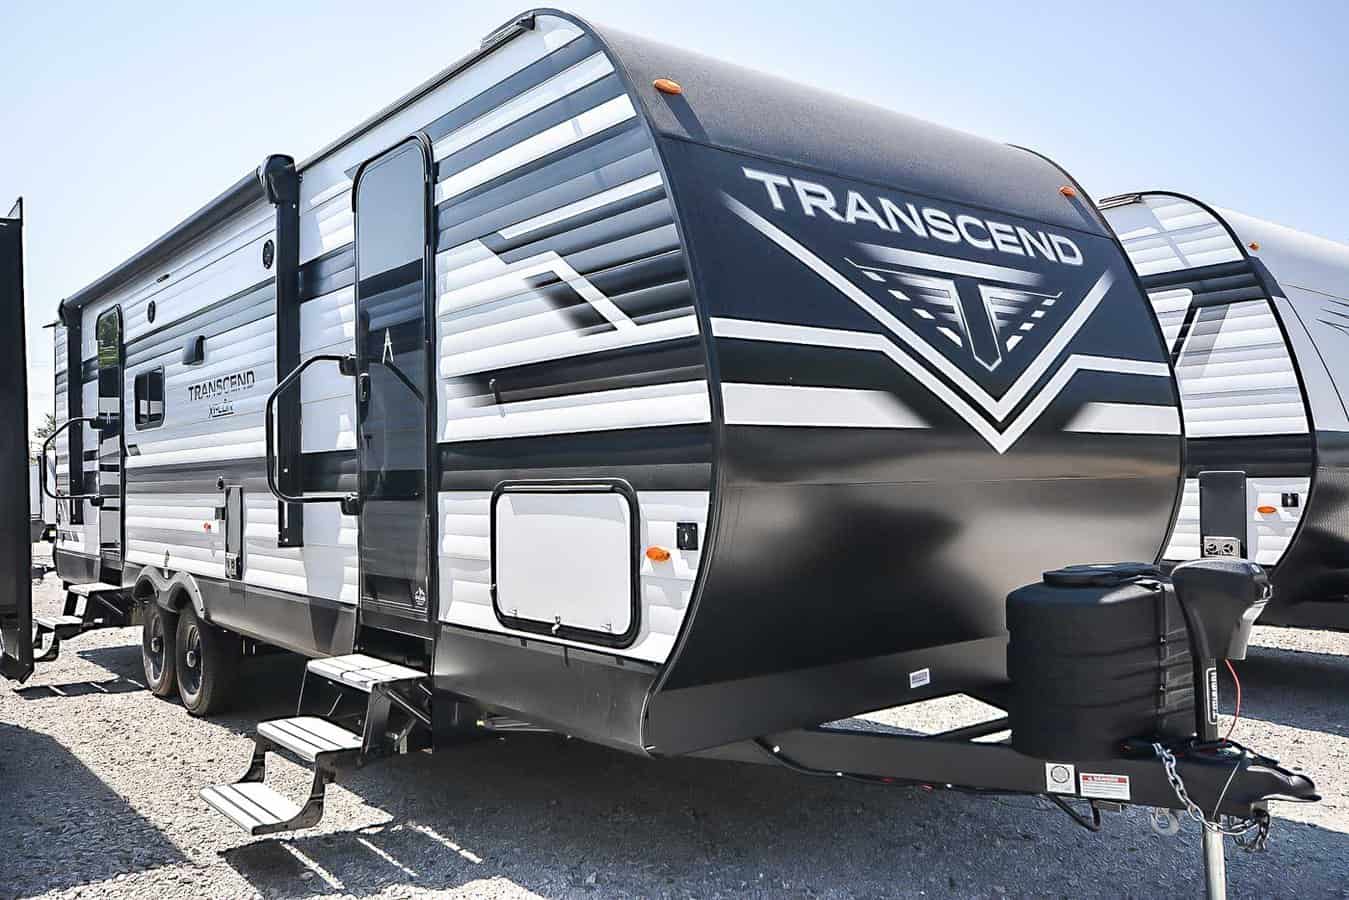 Transcend RVs, Grand Design Travel Trailers